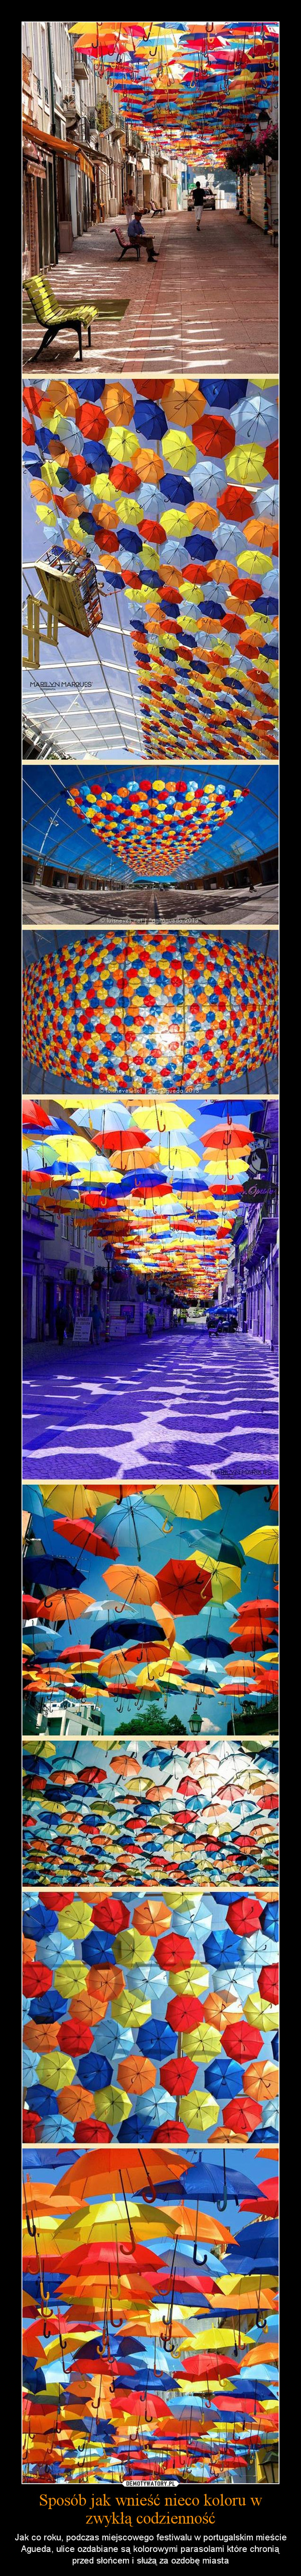 Sposób jak wnieść nieco koloru w zwykłą codzienność – Jak co roku, podczas miejscowego festiwalu w portugalskim mieście Agueda, ulice ozdabiane są kolorowymi parasolami które chronią przed słońcem i służą za ozdobę miasta 